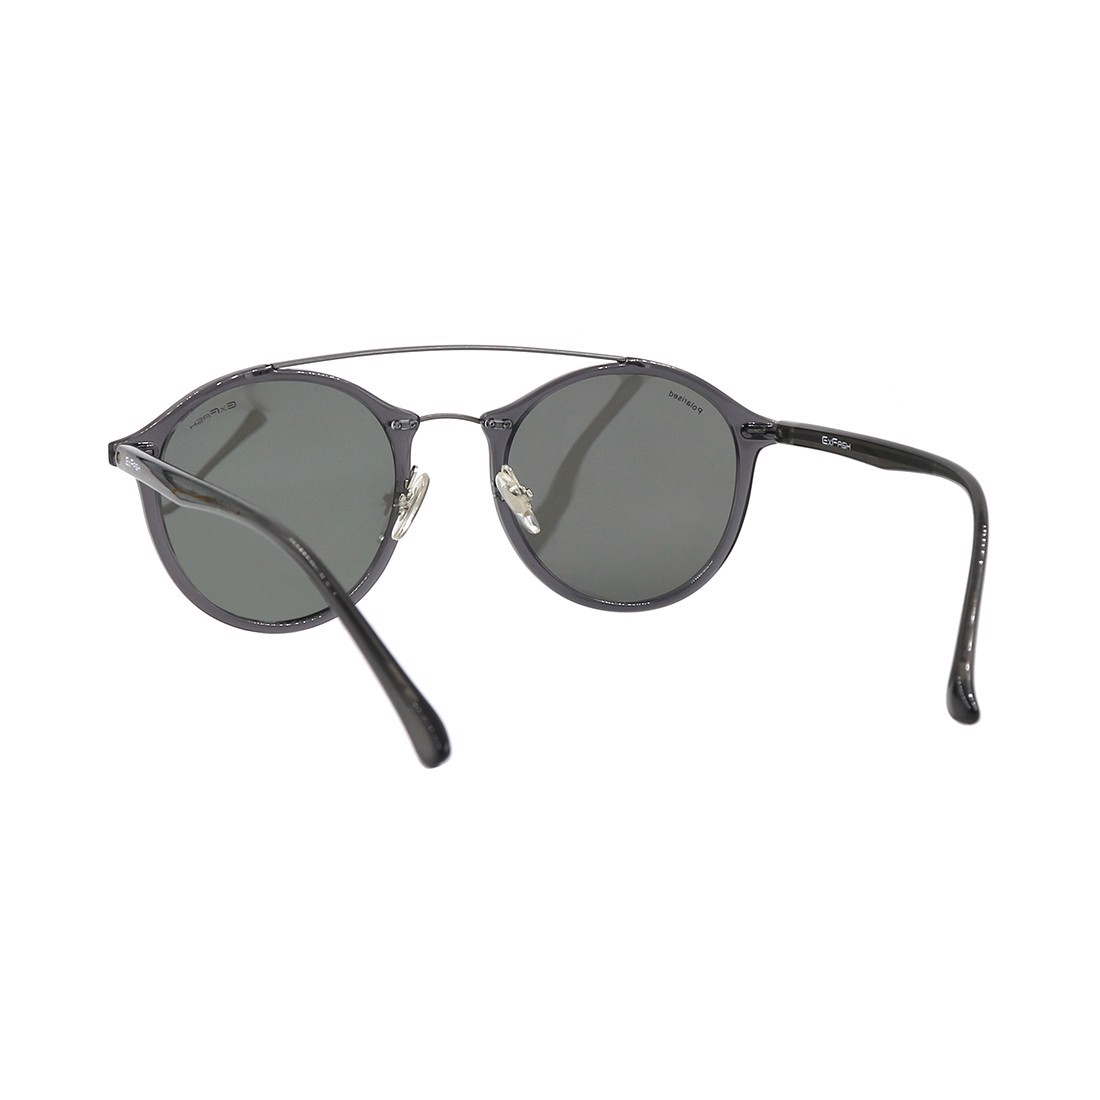 Kính mát, mắt kính chính hãng Exfash EF36760 C41 - Tặng 1 nước và khăn lau kính